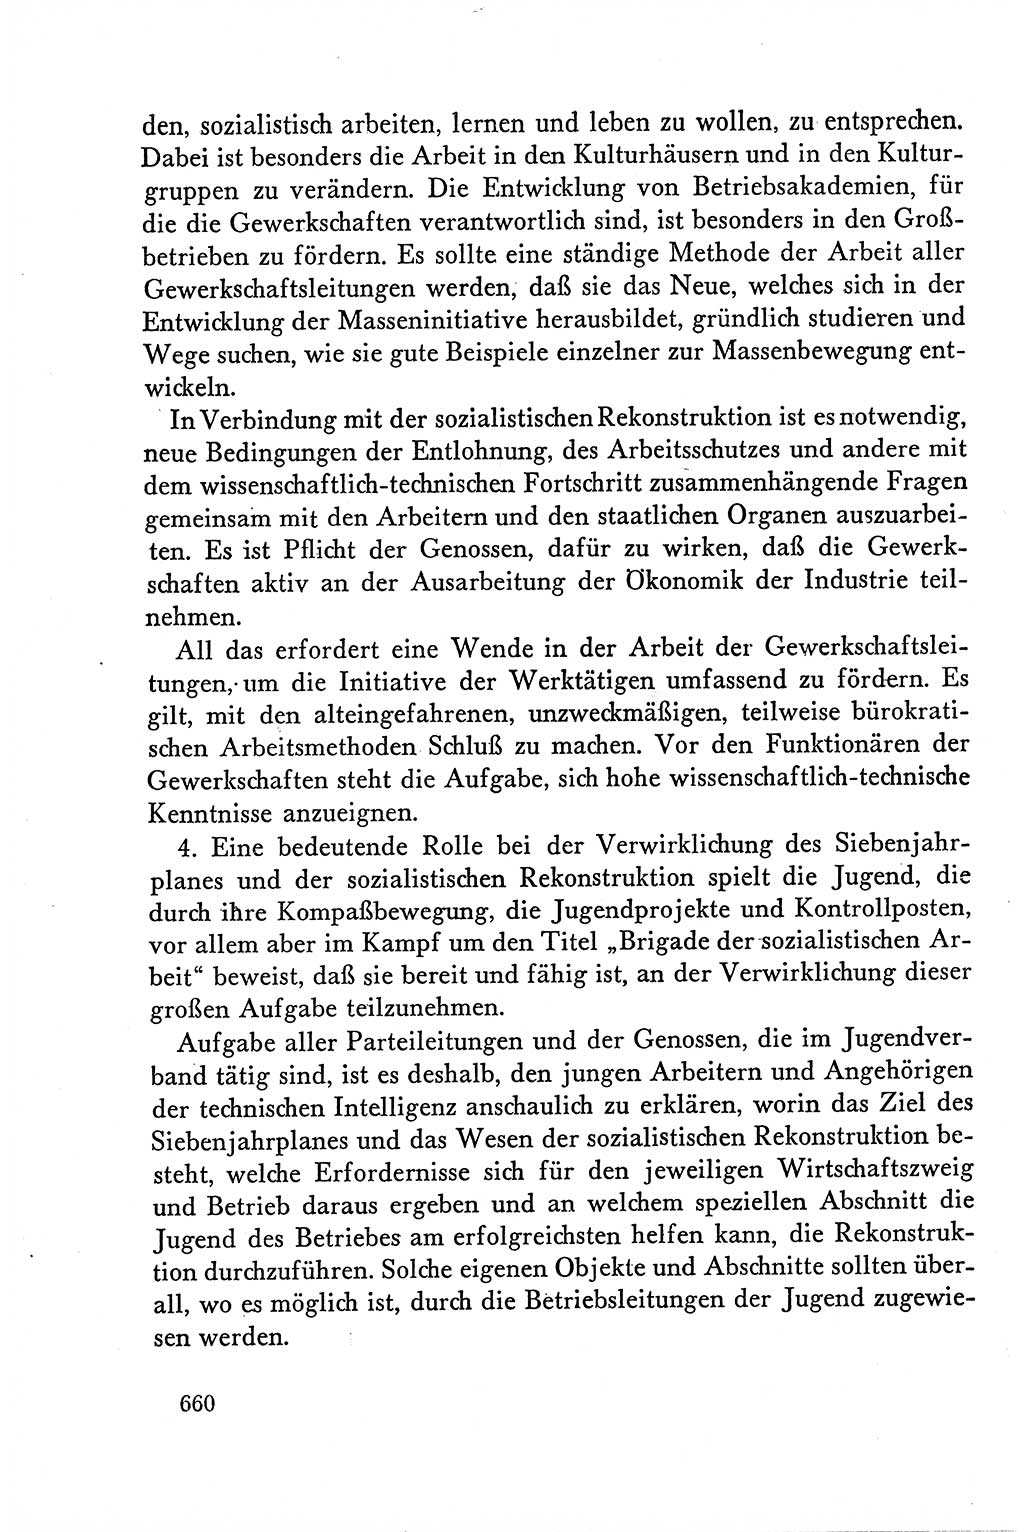 Dokumente der Sozialistischen Einheitspartei Deutschlands (SED) [Deutsche Demokratische Republik (DDR)] 1958-1959, Seite 660 (Dok. SED DDR 1958-1959, S. 660)